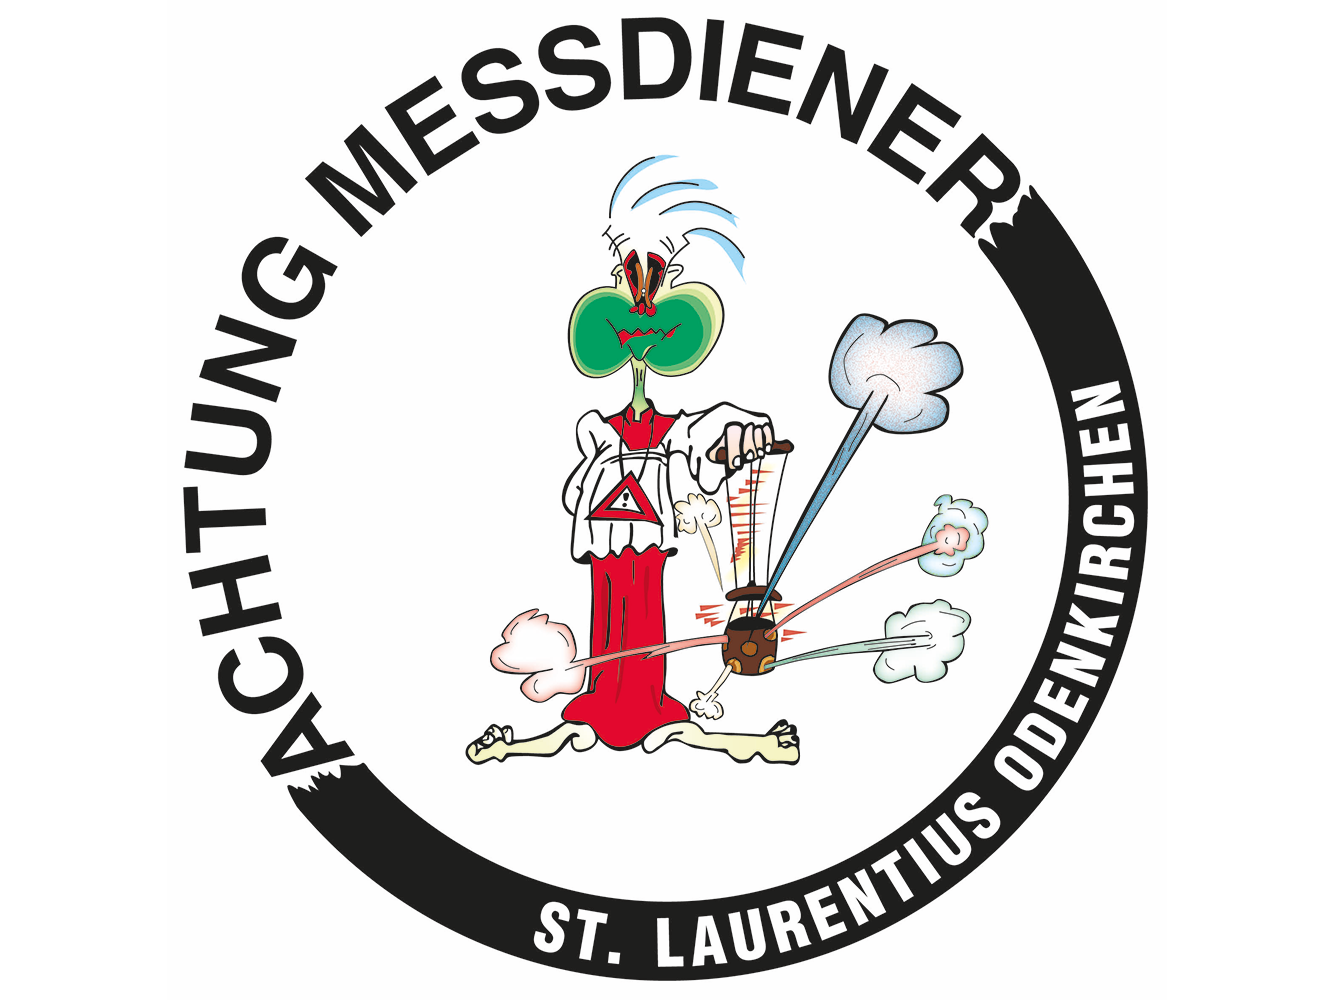 Logo Messdiener St. Laurentius Teaser